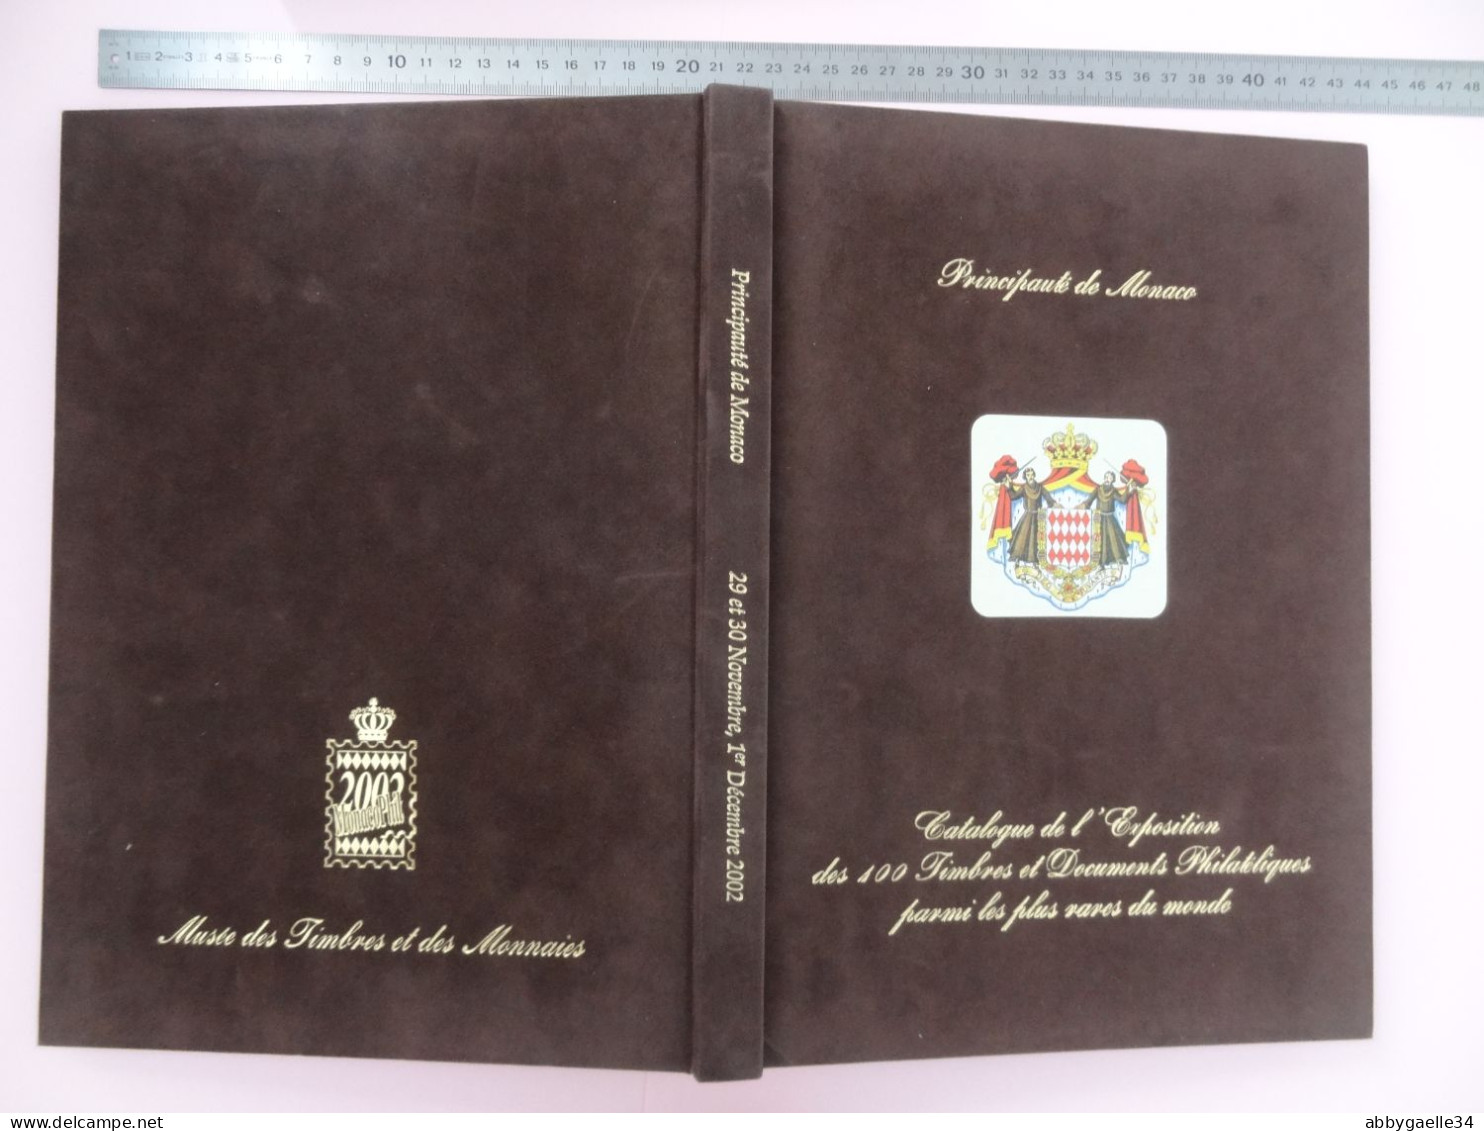 LUXE Catalogue De L'exposition De 2002 Des 100 Timbres Et Documents Philatéliques Parmi Les Plus Rares Du Monde Monaco - Auktionskataloge